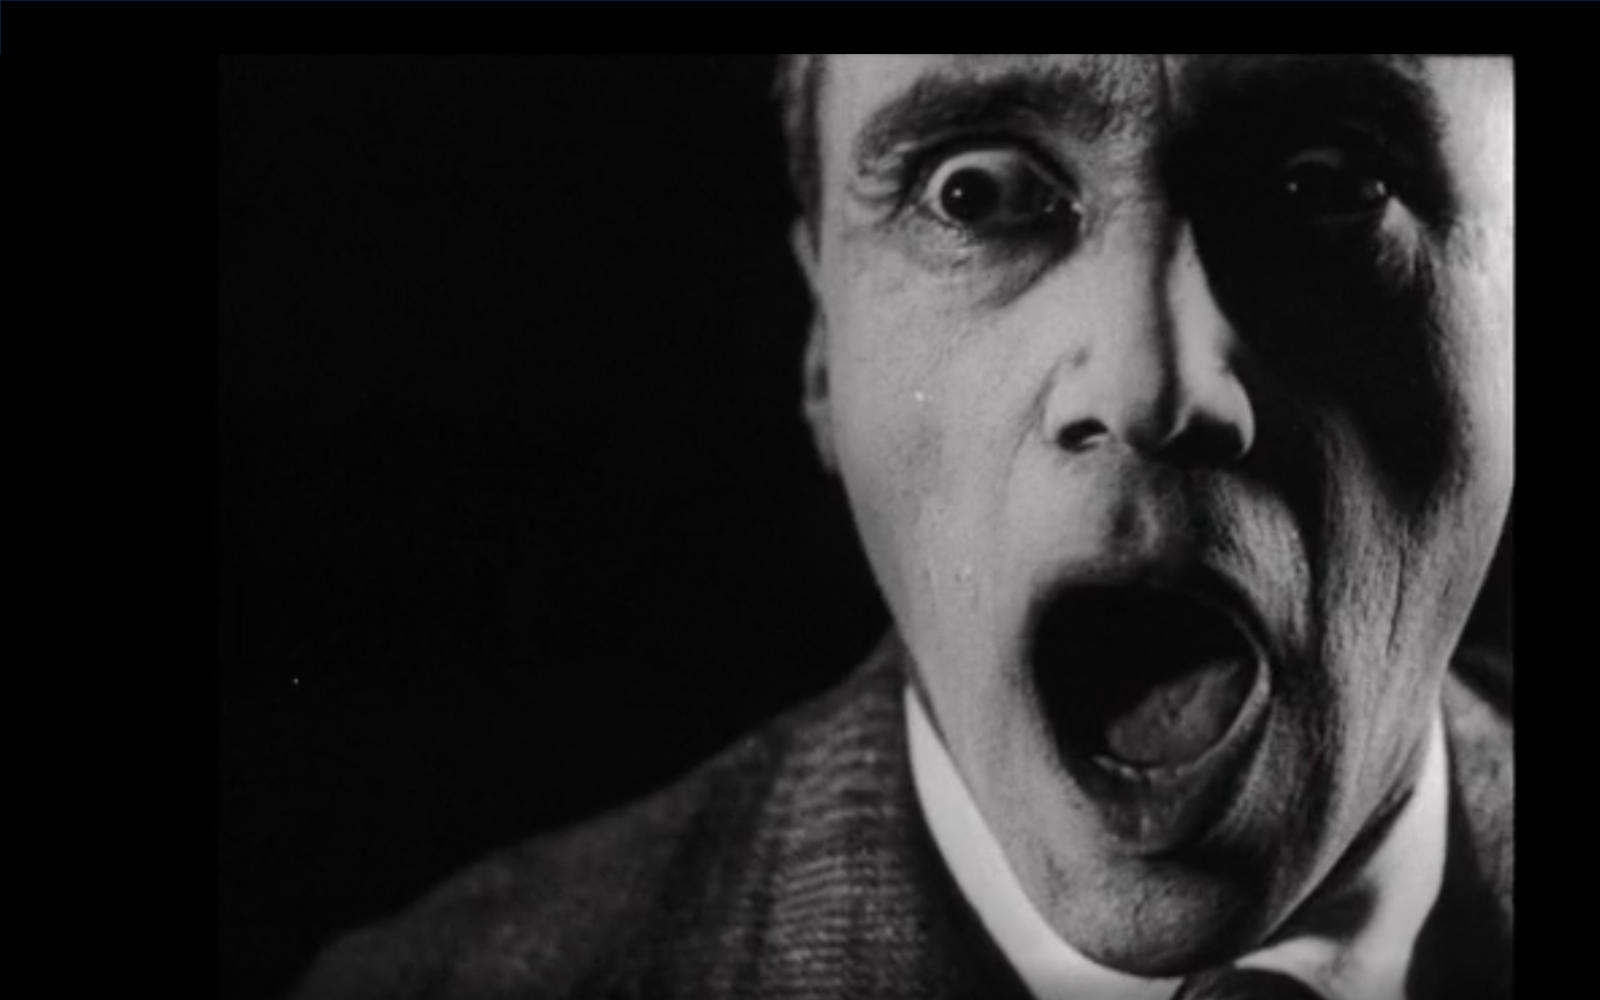 Bild aus dem Film »Alles dreht sich, Alles bewegt sich« von 1929. Abgebildet ist ein Mann mit aufgerissenem Mund in Schwarz-Weiß.